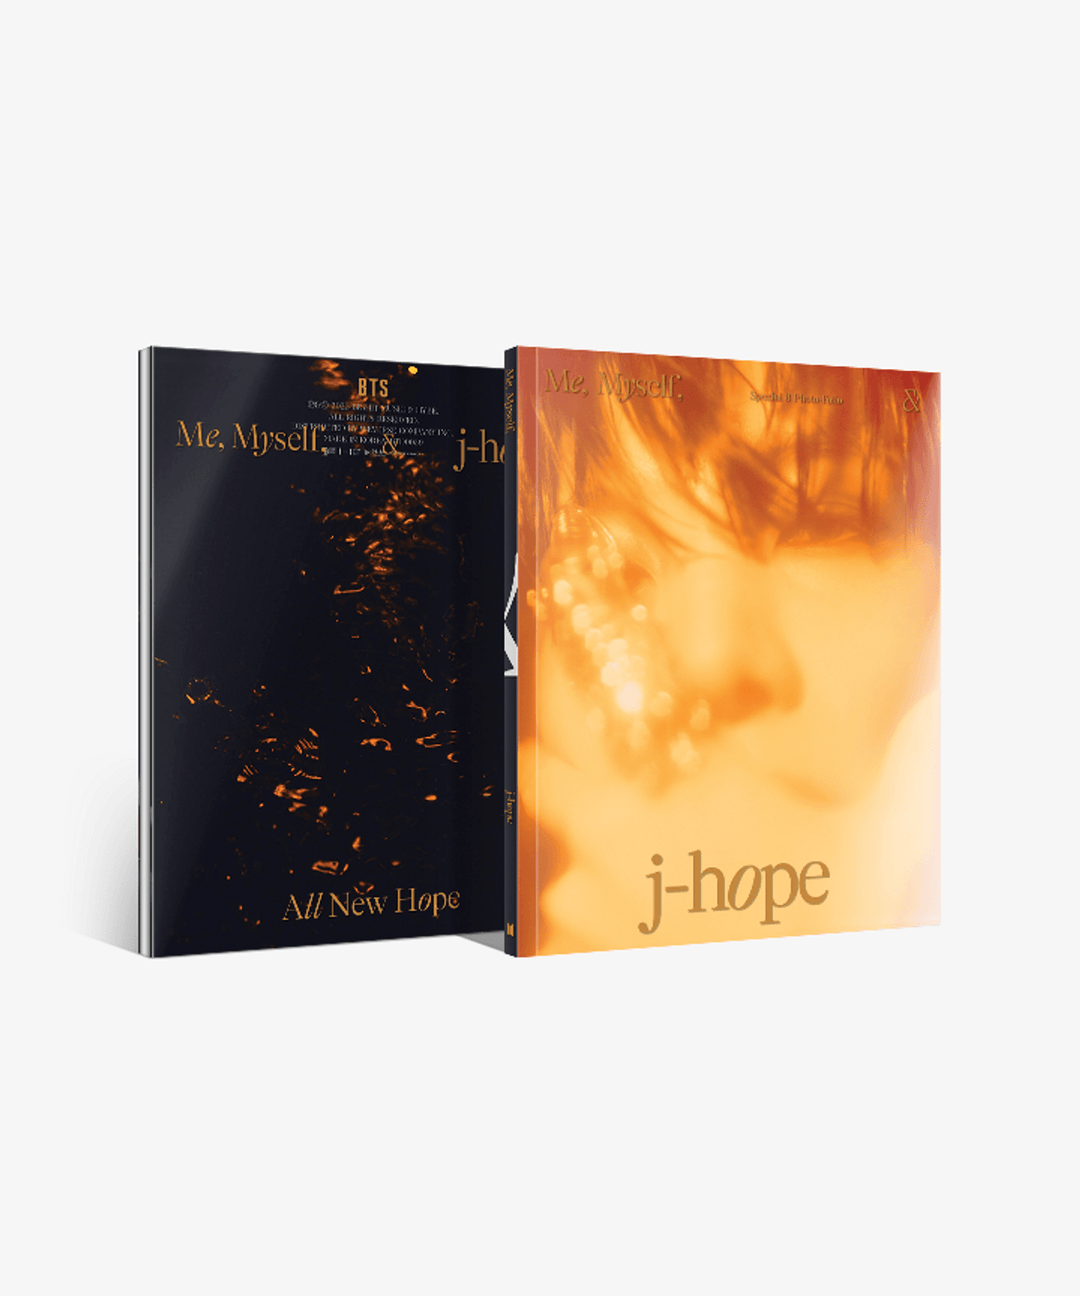 스페셜 8 포토 - Folio Me, Myself, and j-hope 'All New Hope'